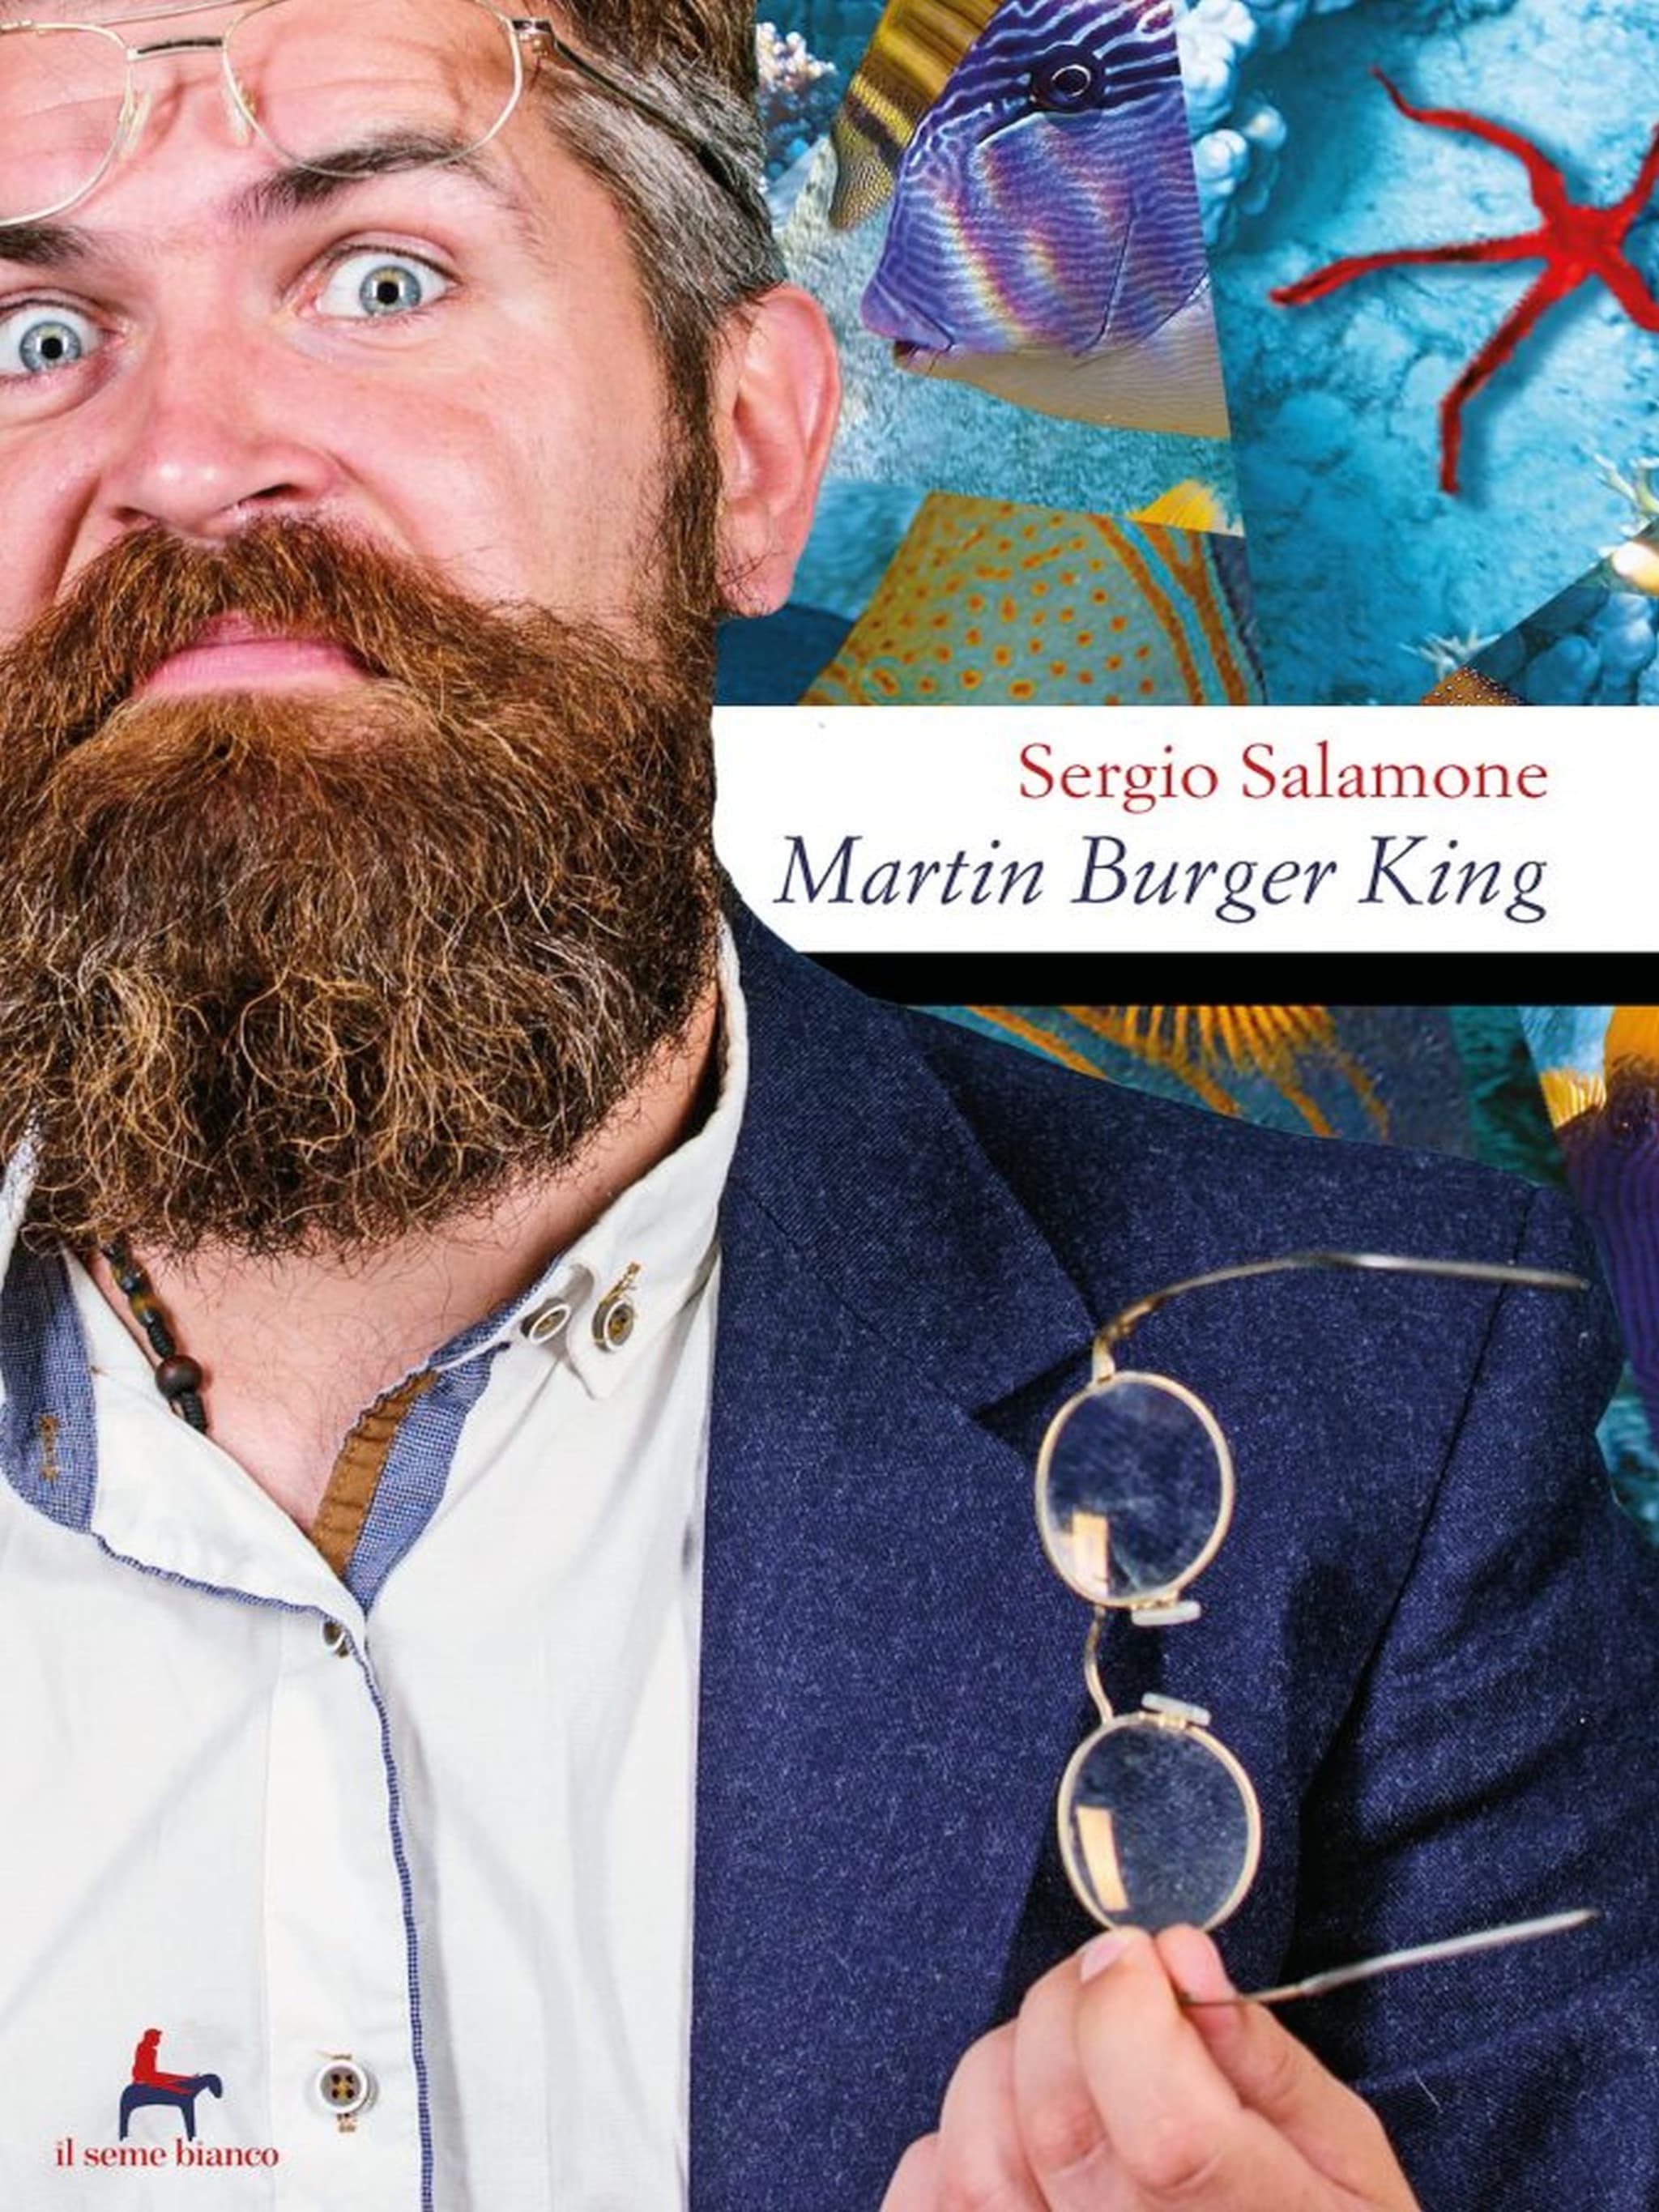 Martin Burger King ilmaiseksi